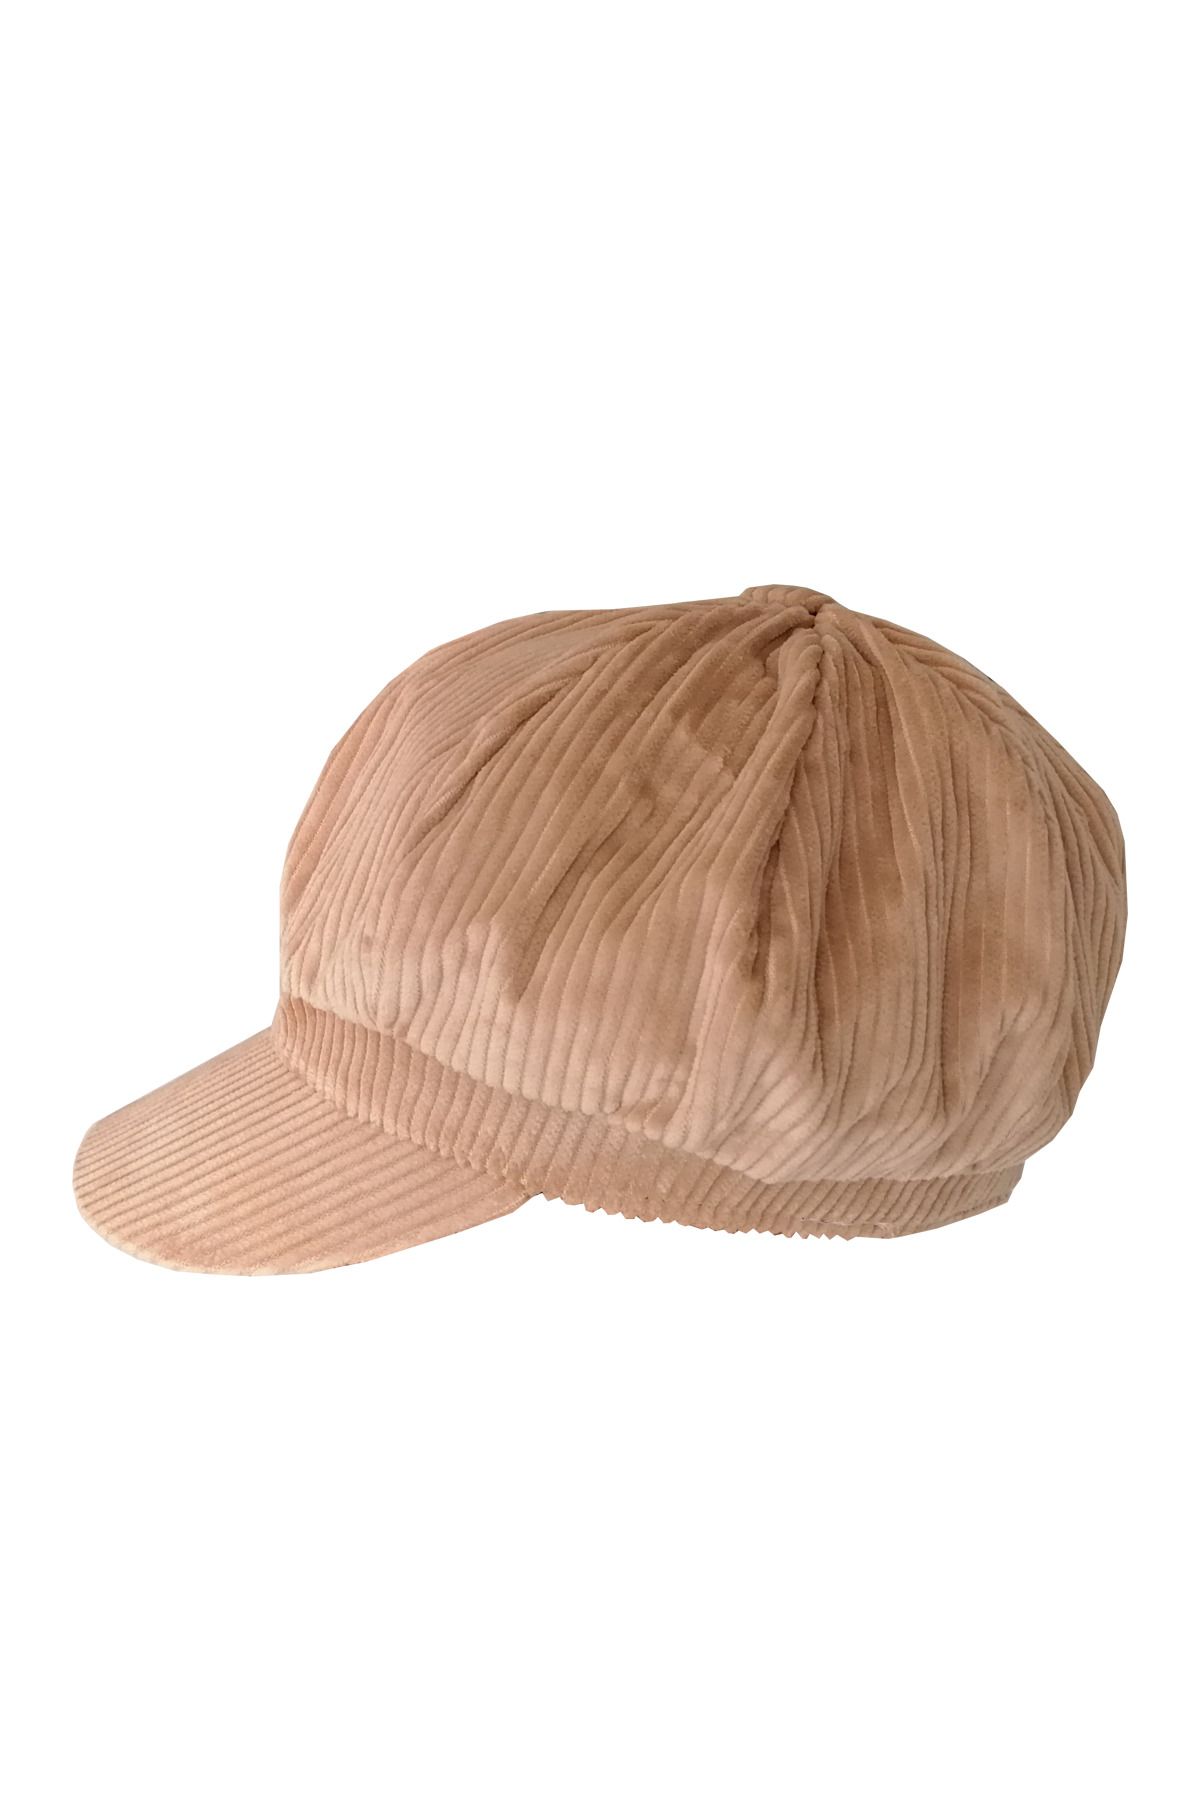 Bay Şapkacı Kadın Denizci Tipi Kadife Şapka Bej 1243